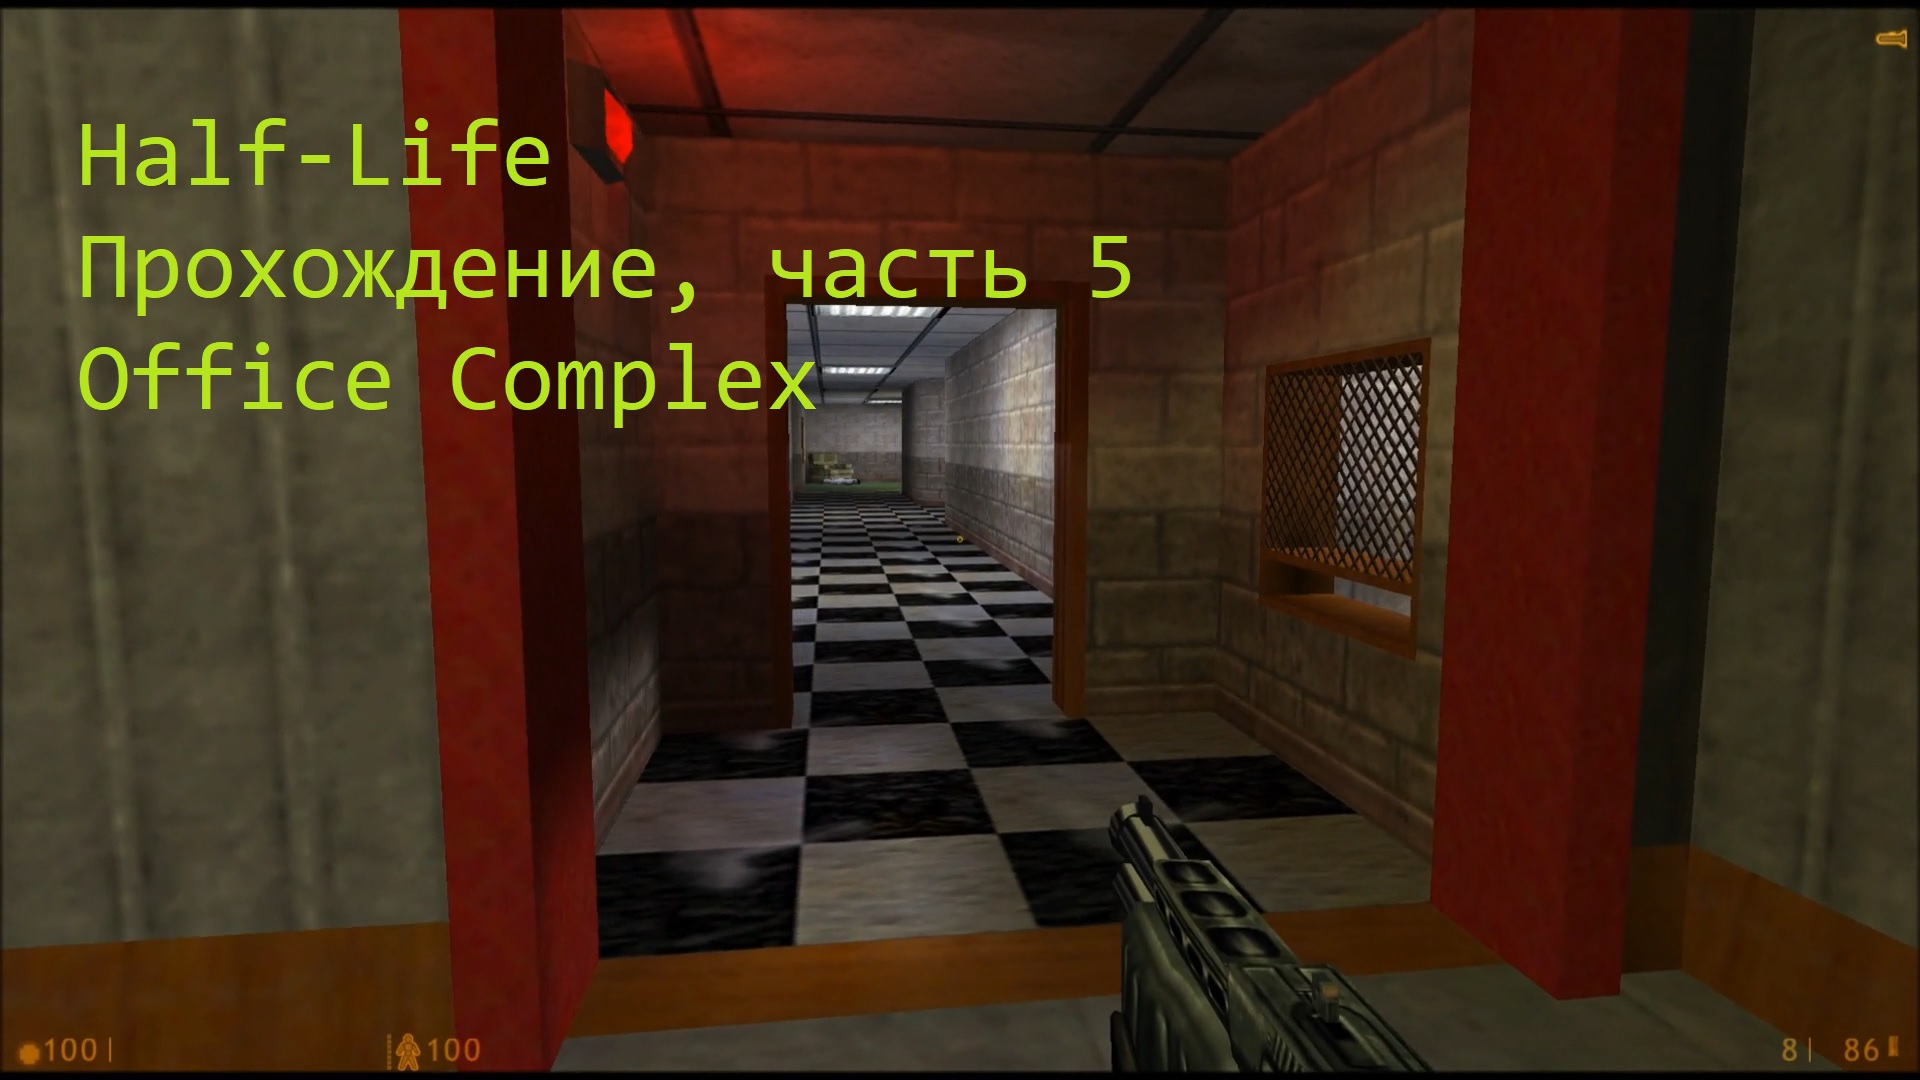 Half-Life, Прохождение, часть 5 - Office Complex